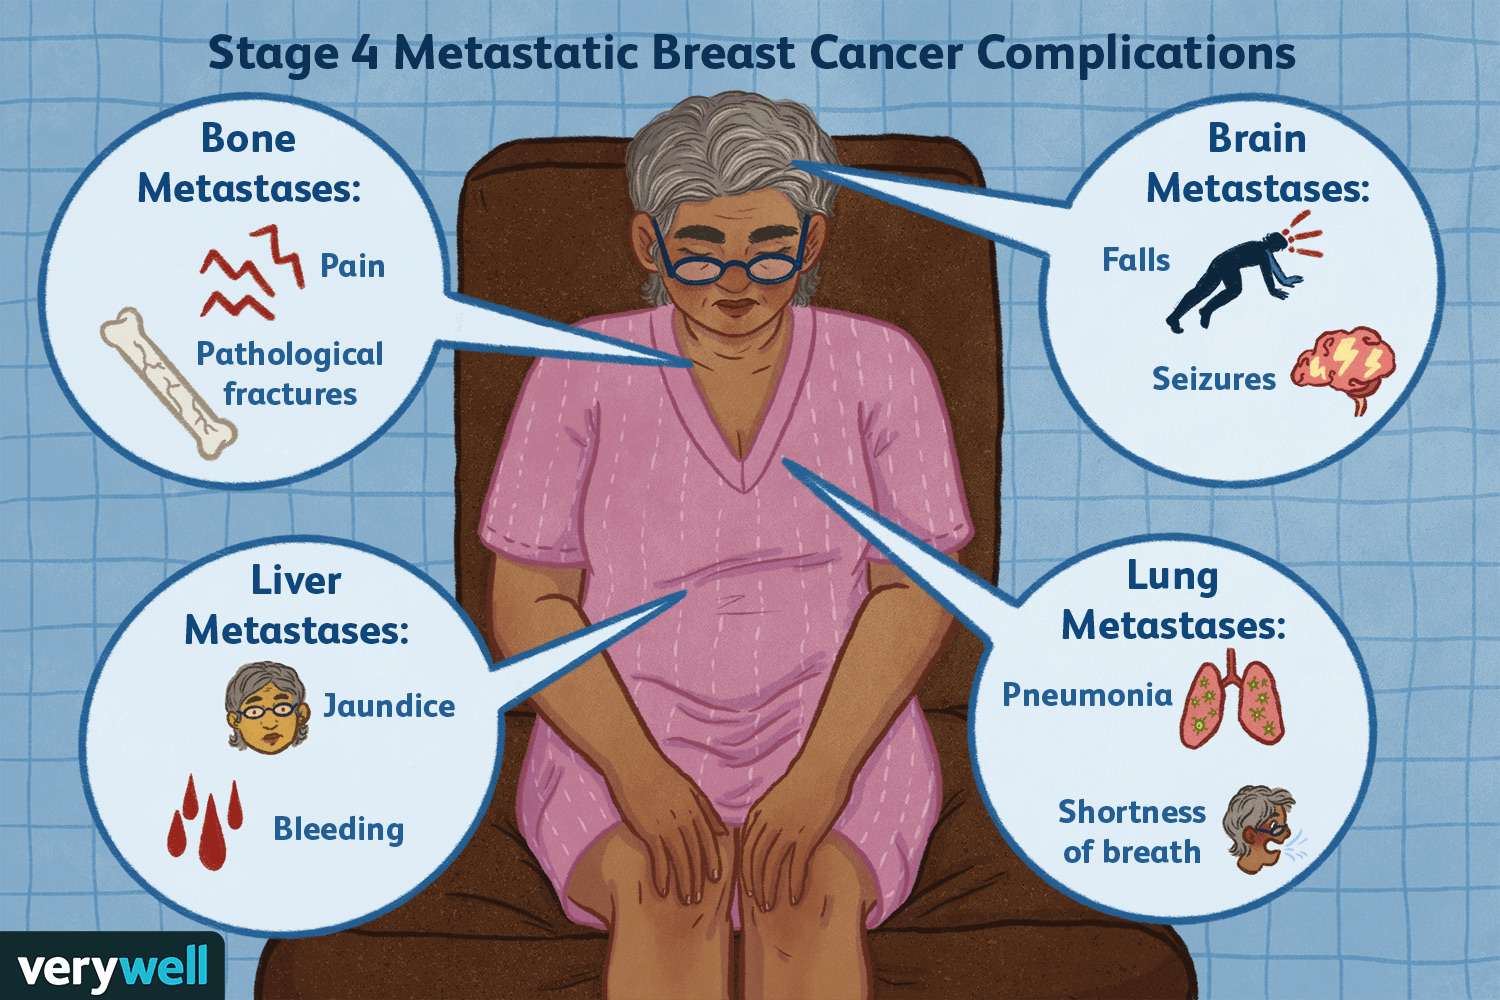 Signs of Metastatic Breast Cancer 1 c5deda4b877248269a7d6183a93cb0aa c5deda4b877248269a7d6183a93cb0aa